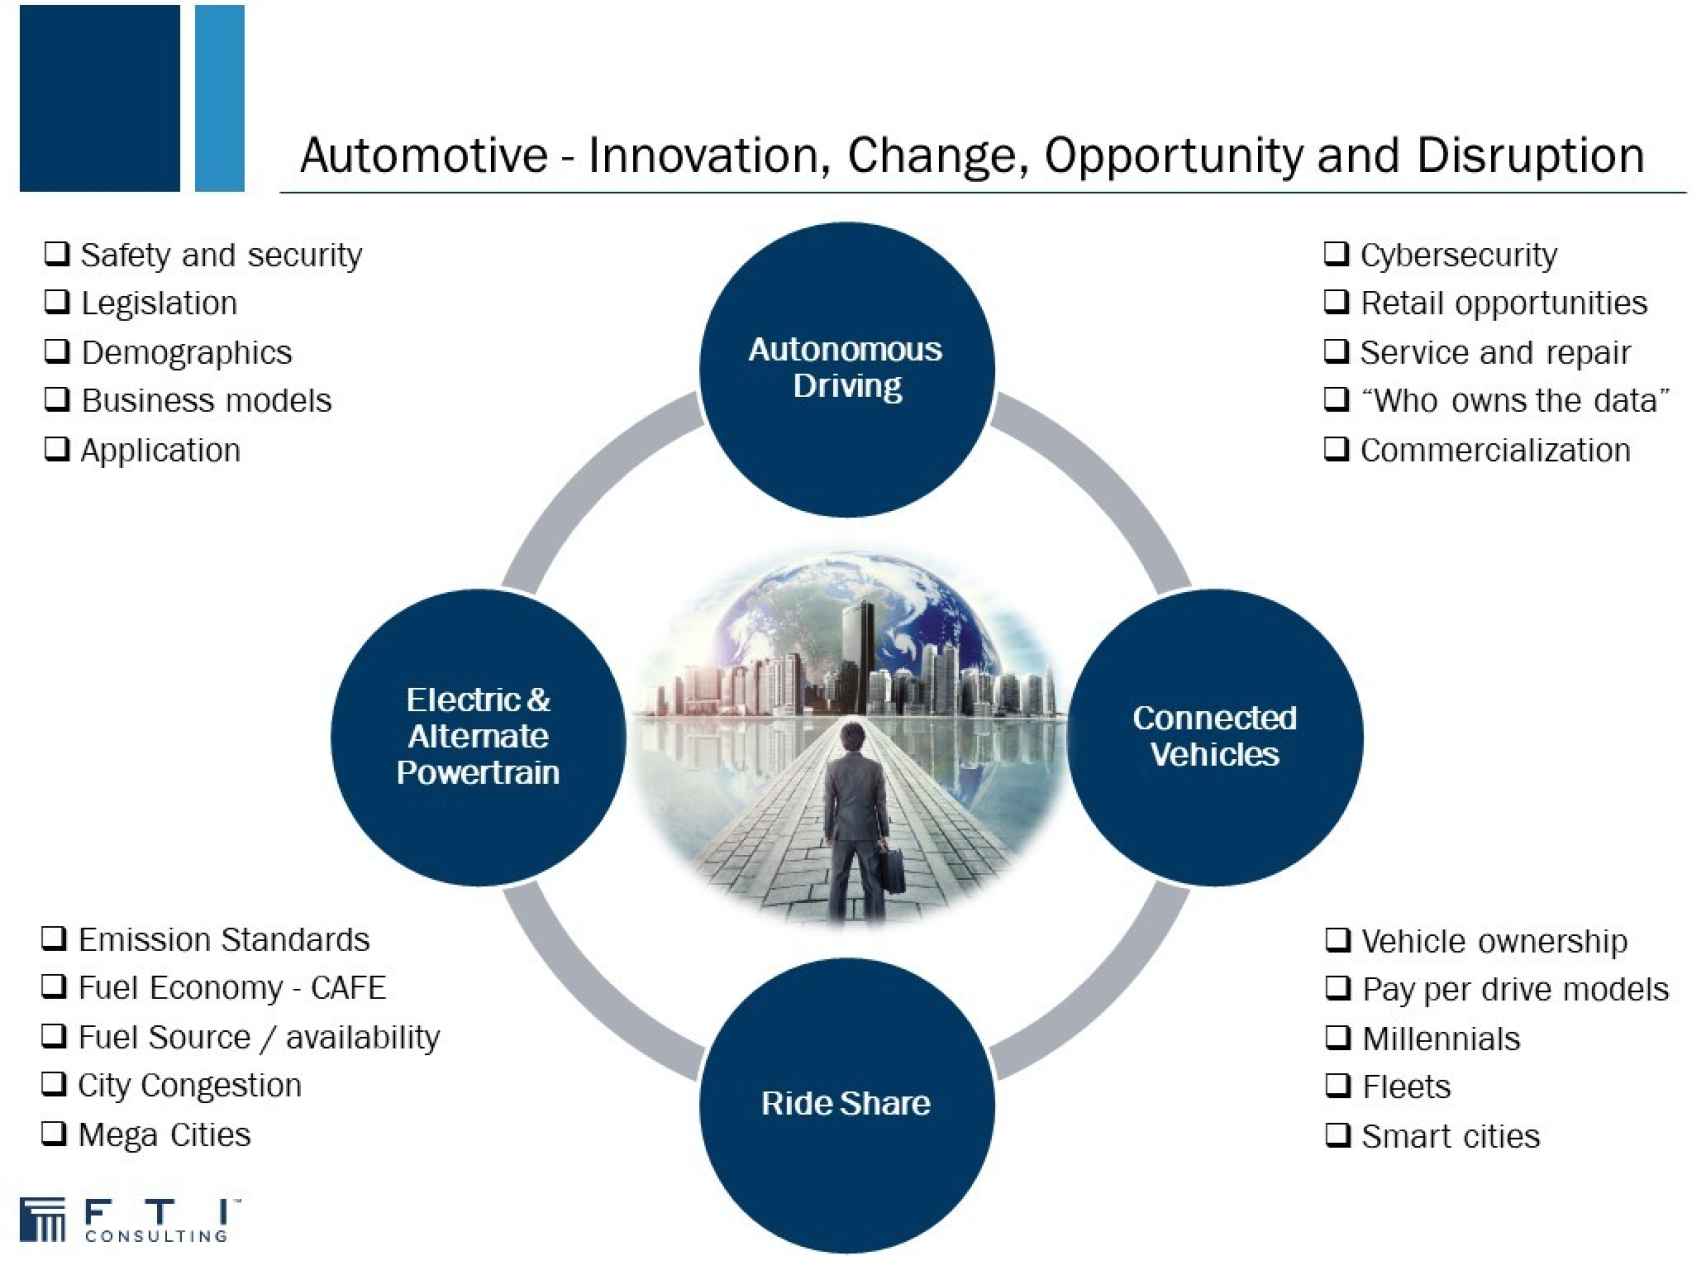 Gráfico de Mike Rayne sobre Innovación, cambios, oportunidades y disrupción del sector automoción a nivel mundial